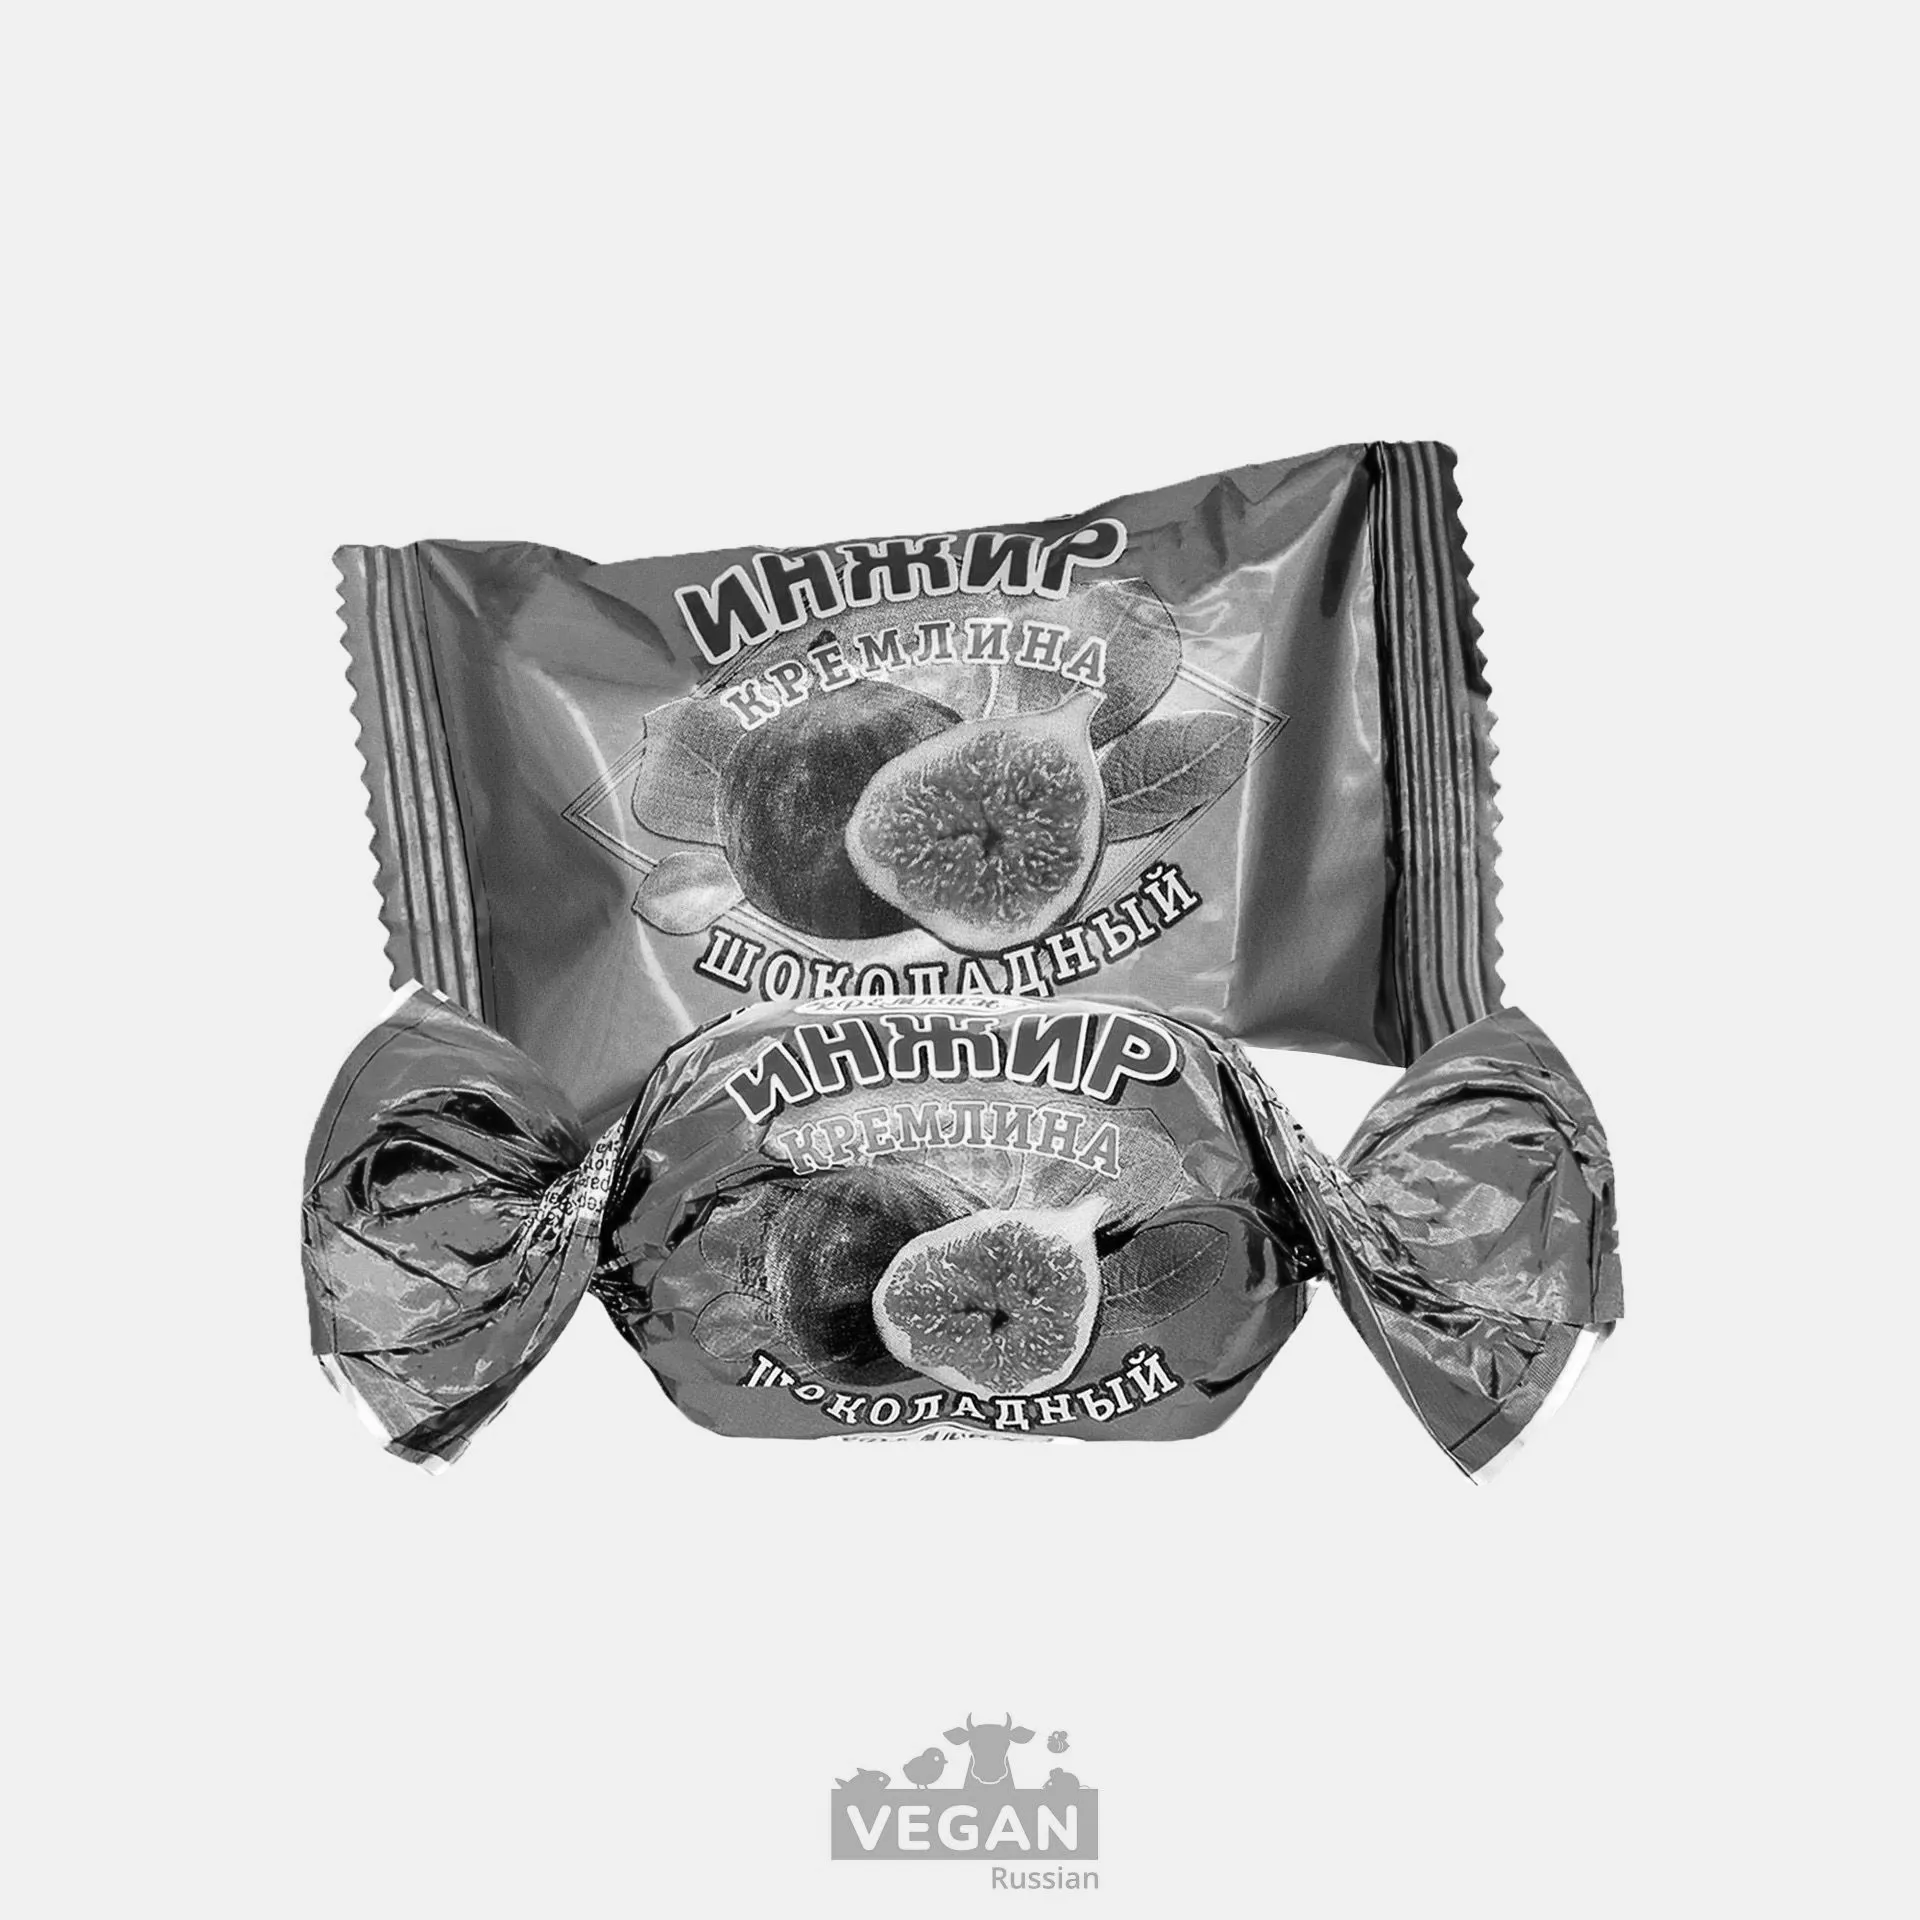 Архив: Инжир в шоколаде Кремлина 190-600 г